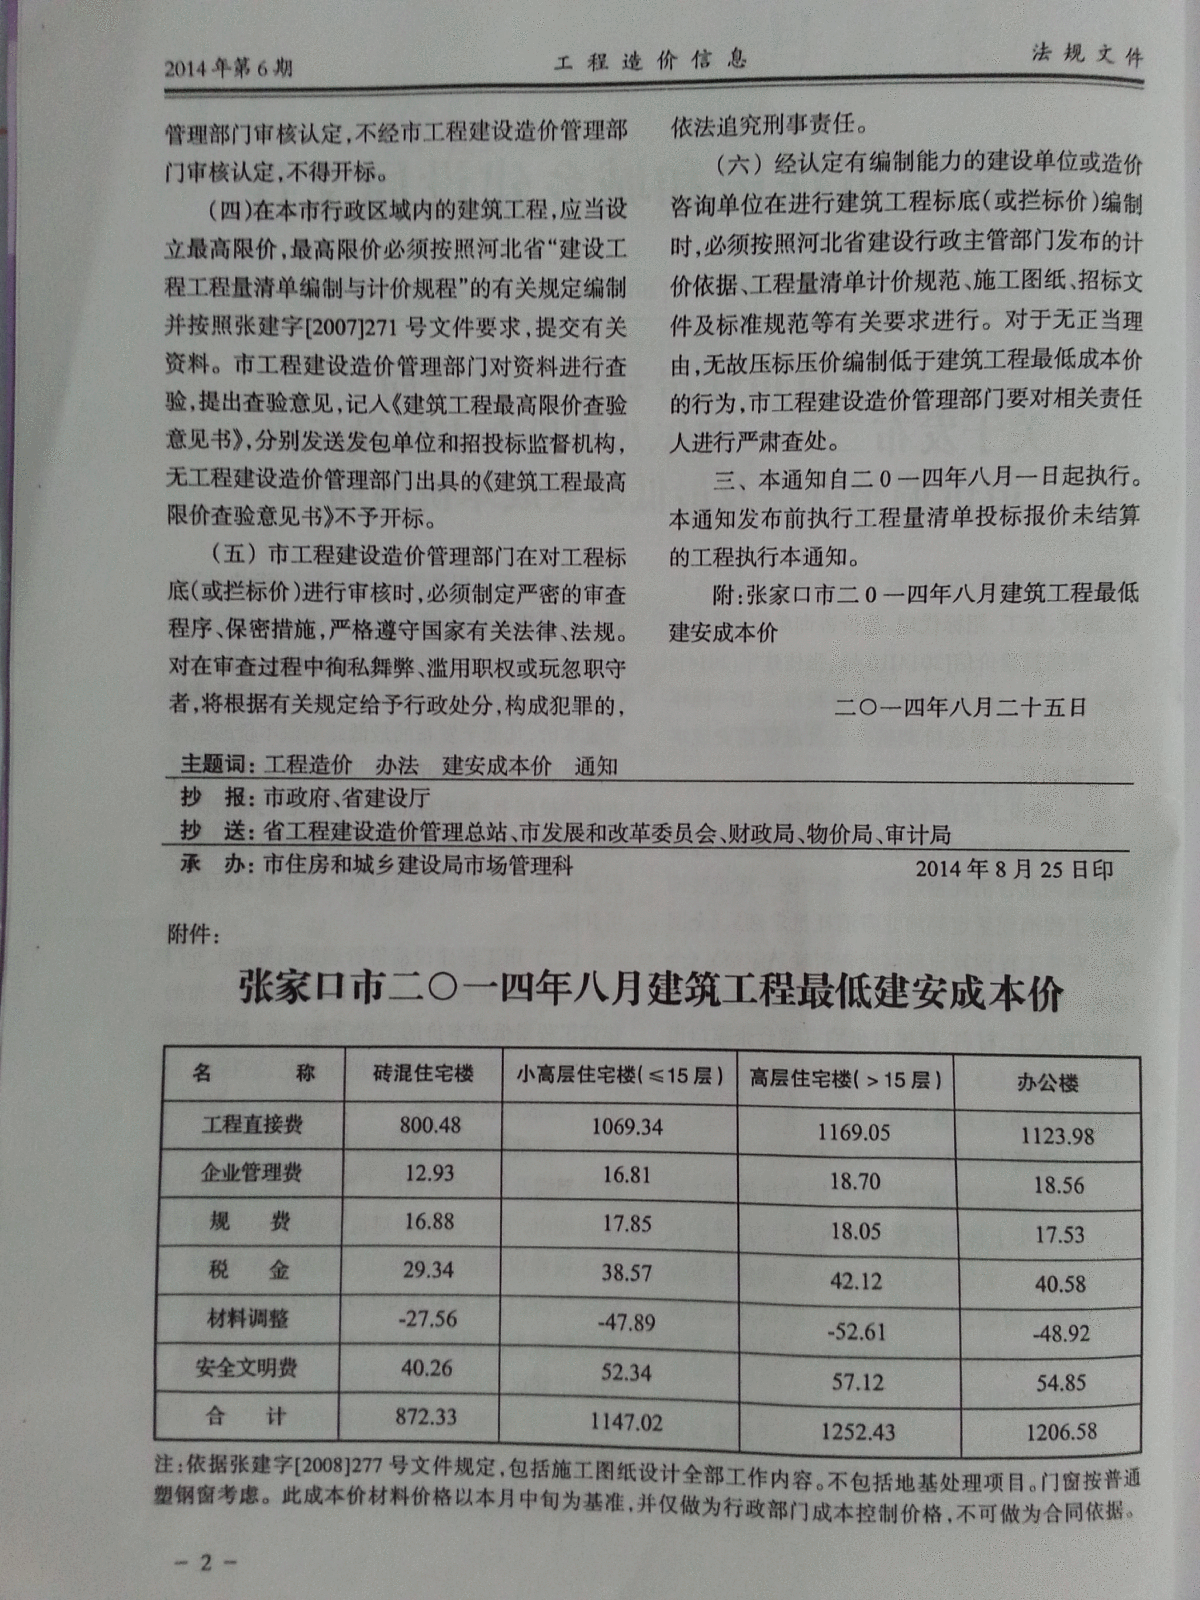 【2014第06期】《张家口市工程造价信息》-图二